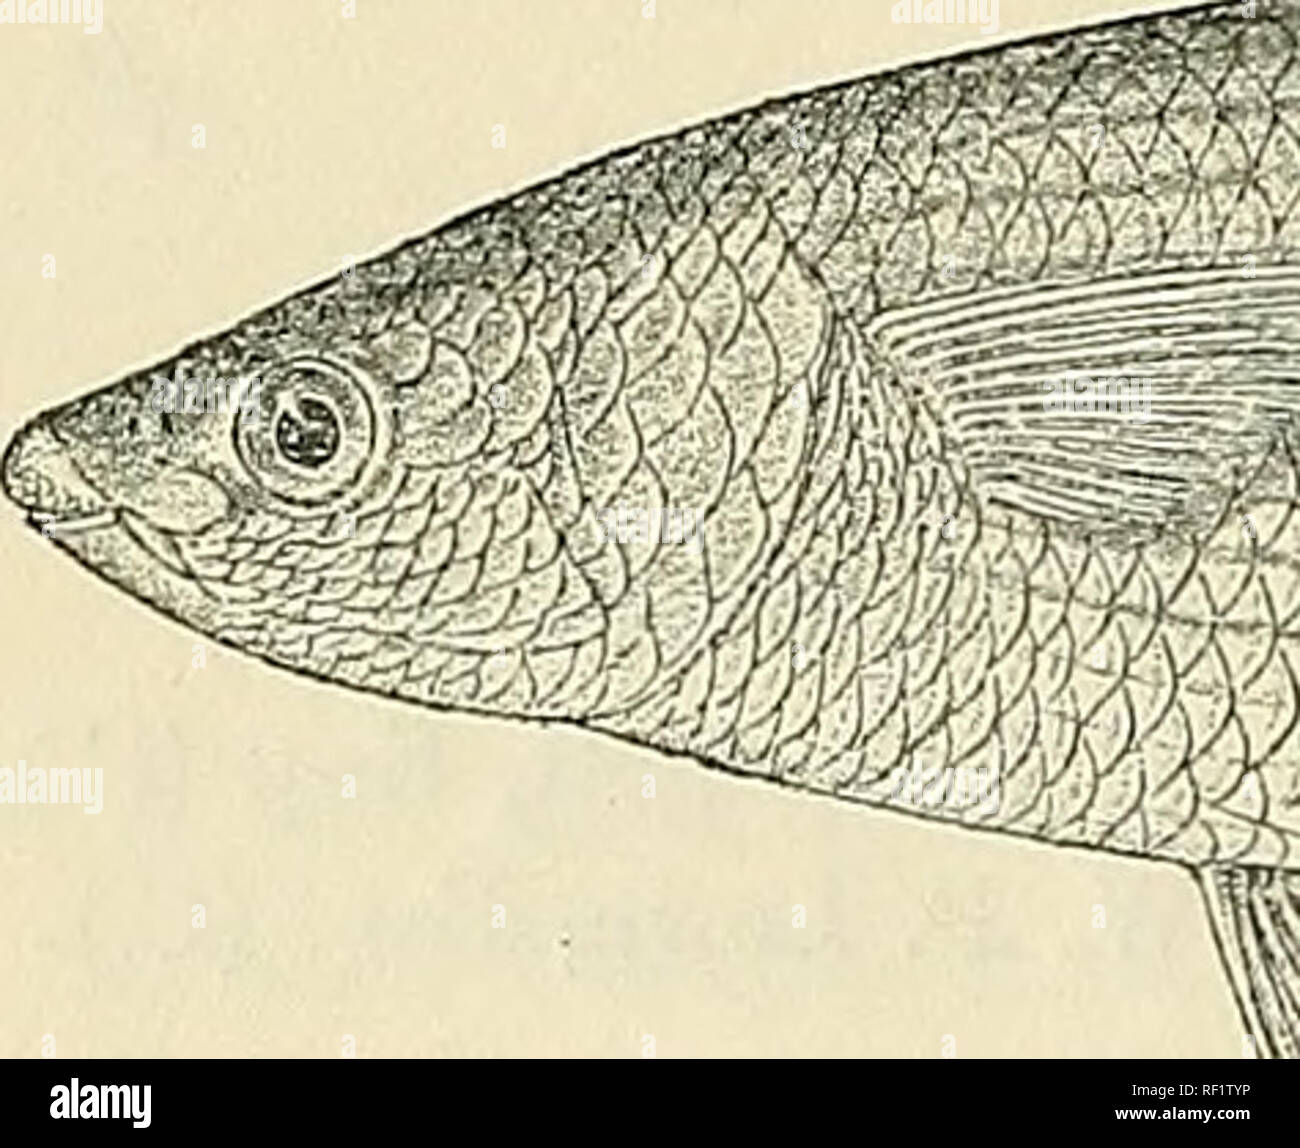 . Catalogue de l'eau douce Poissons de l'Afrique dans le British Museum (Natural History). British Museum (Natural History) ; poissons ; animaux d'eau douce. 90 MUGILIDvE. Ak. Wien, lvii. i. 18fi8, p. 683 ; Moreau, Poiss. France, iii. p. 195 (1881) ; jour, Brit. Le poisson. p. 232, pi. Ixvii. (1881) ; Sinifct, Scand. Le poisson. i. p. 334, pi. xv. fig. 11 (1893). Mugil cephalus, var. B, Delaroche, Ann. Mas. Paris, xiii. 1809, p. 358, pi. xxi. ' Fig. 7. Mugil cephalus (non L.), Risso, Ichthyol. Nice, p. 343 (1810). Mugil labrosus, Risso, Hist. Nat. Eur. Merid. iii. p. 389 (1826). Mugil corrugatus, Lowe, TV. Zool. Afin Banque D'Images